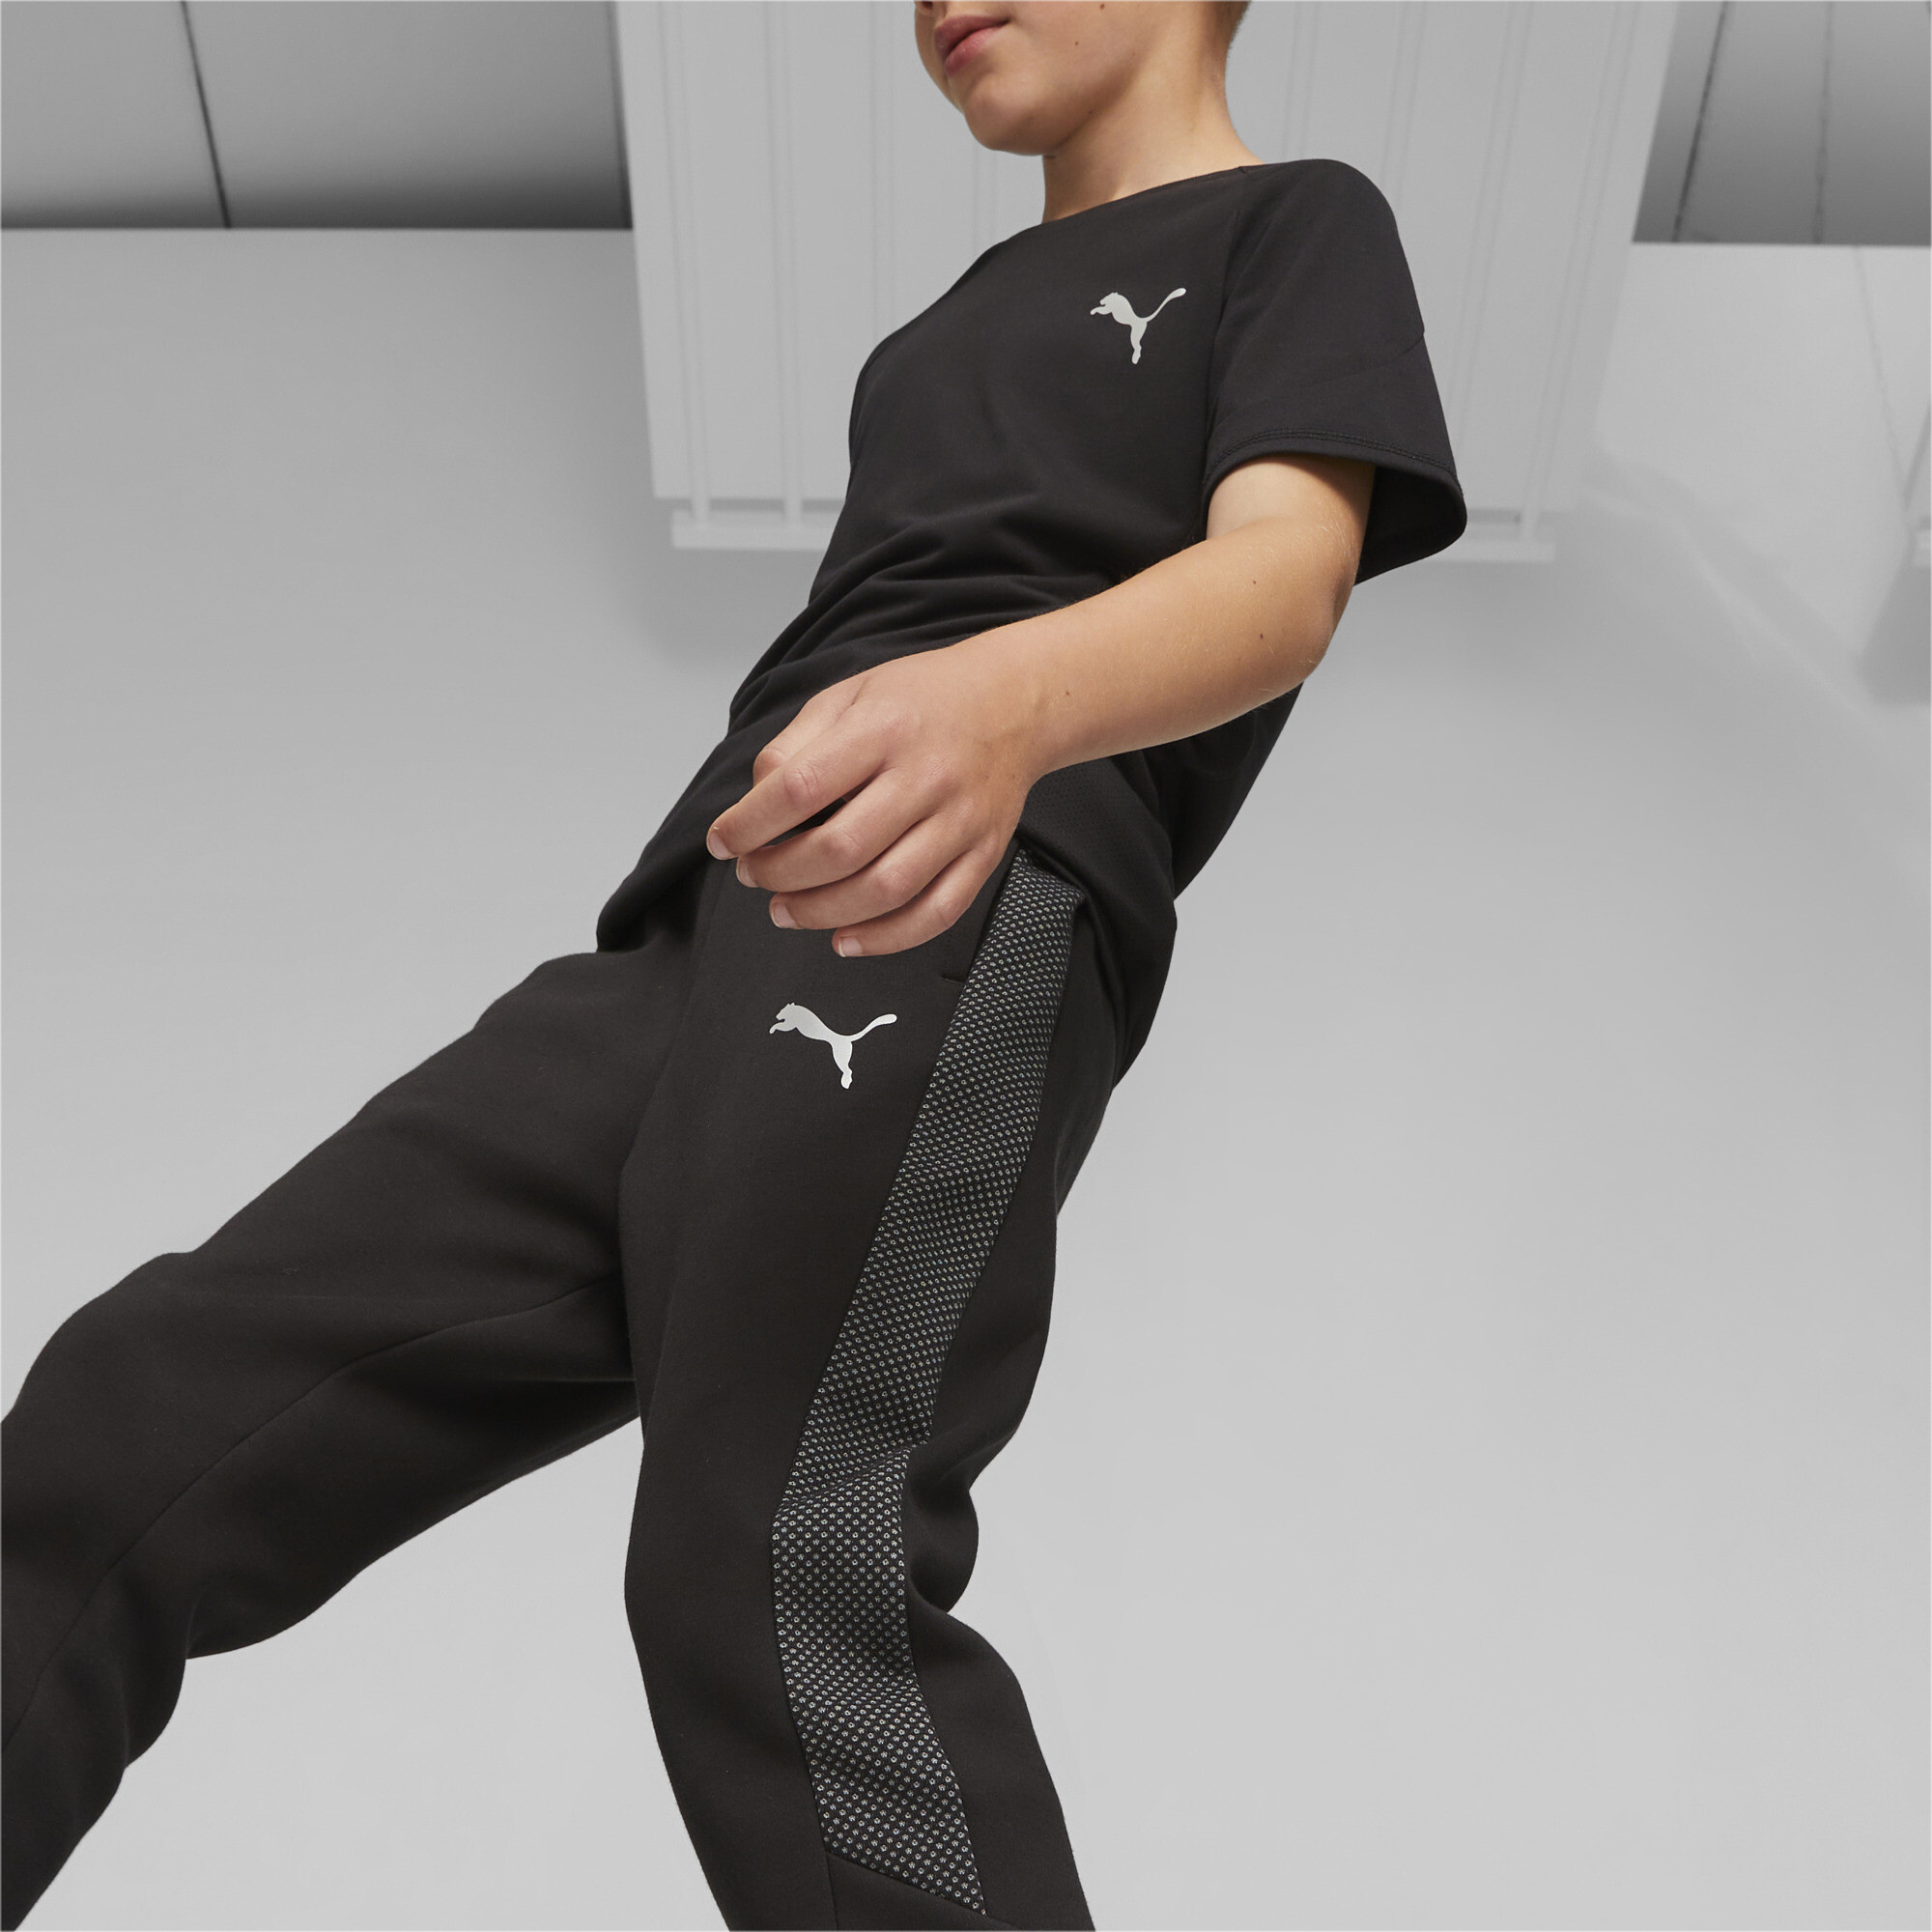 PUMA Evostripe Sweatpants In Black, Size 9-10 Youth